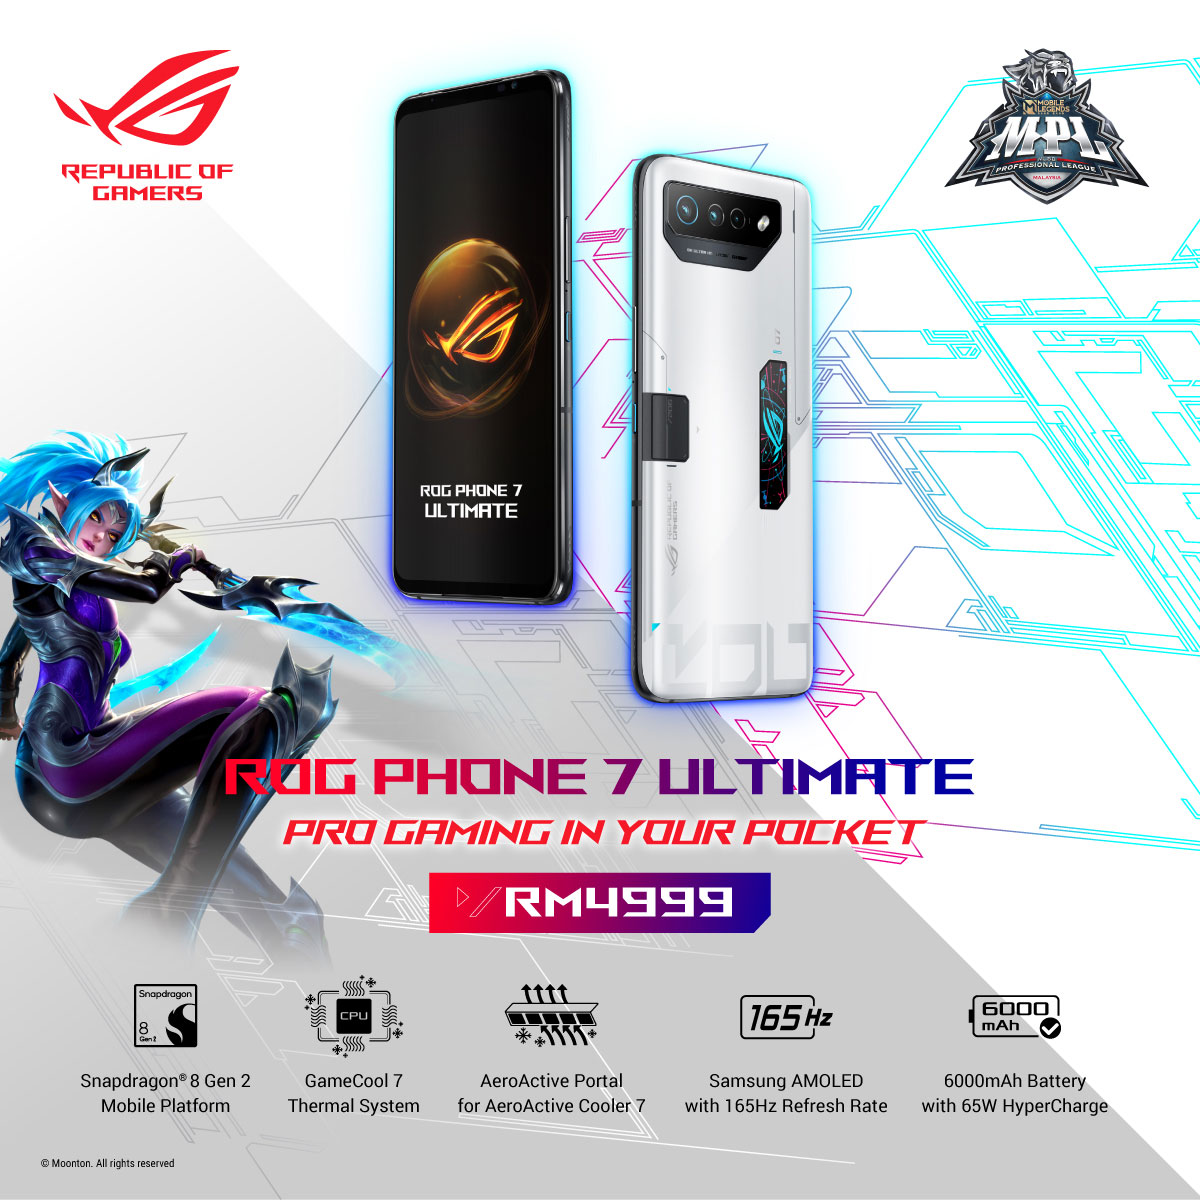 ASUS ROG Phone 7 Ultimate Pricing